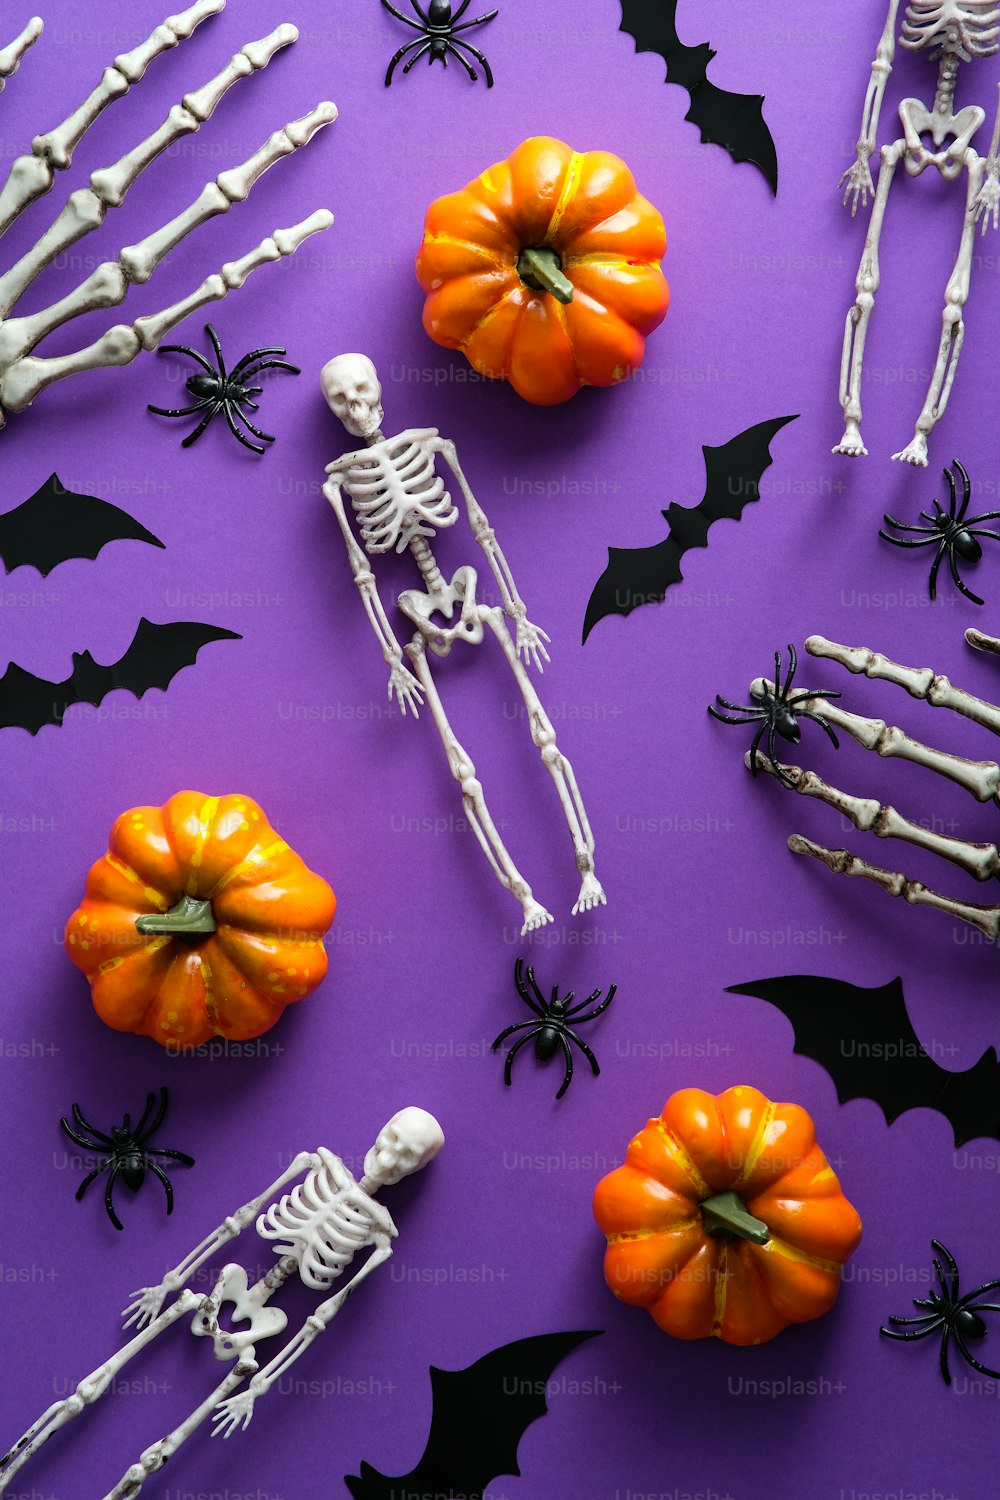 Concepto de feliz fiesta de Halloween. Calabazas planas, calabazas de vista superior, esqueletos, murciélagos, arañas sobre fondo púrpura.